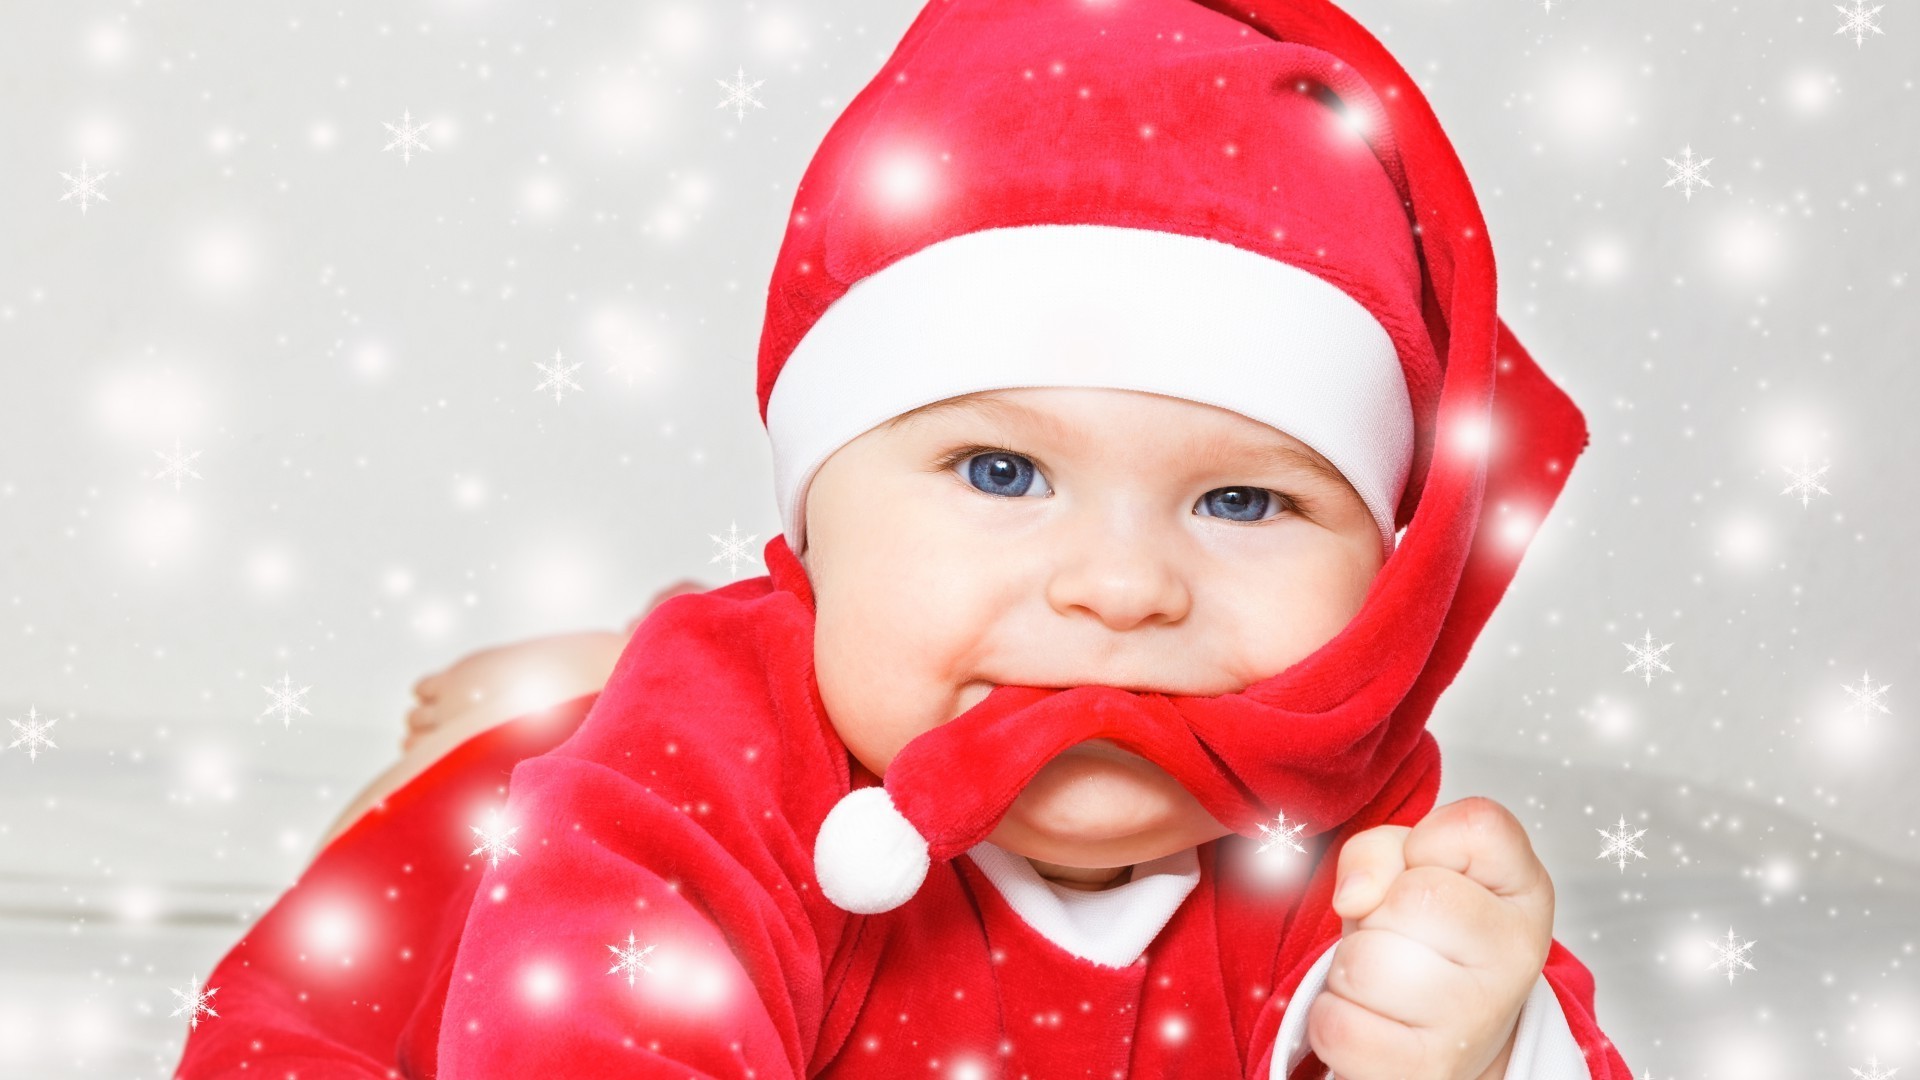 младенцы зима рождество ребенок снег удовольствие крышка милые мало радость мерри счастье холодная сюрприз смешно подарок праздник радуйтесь крышка